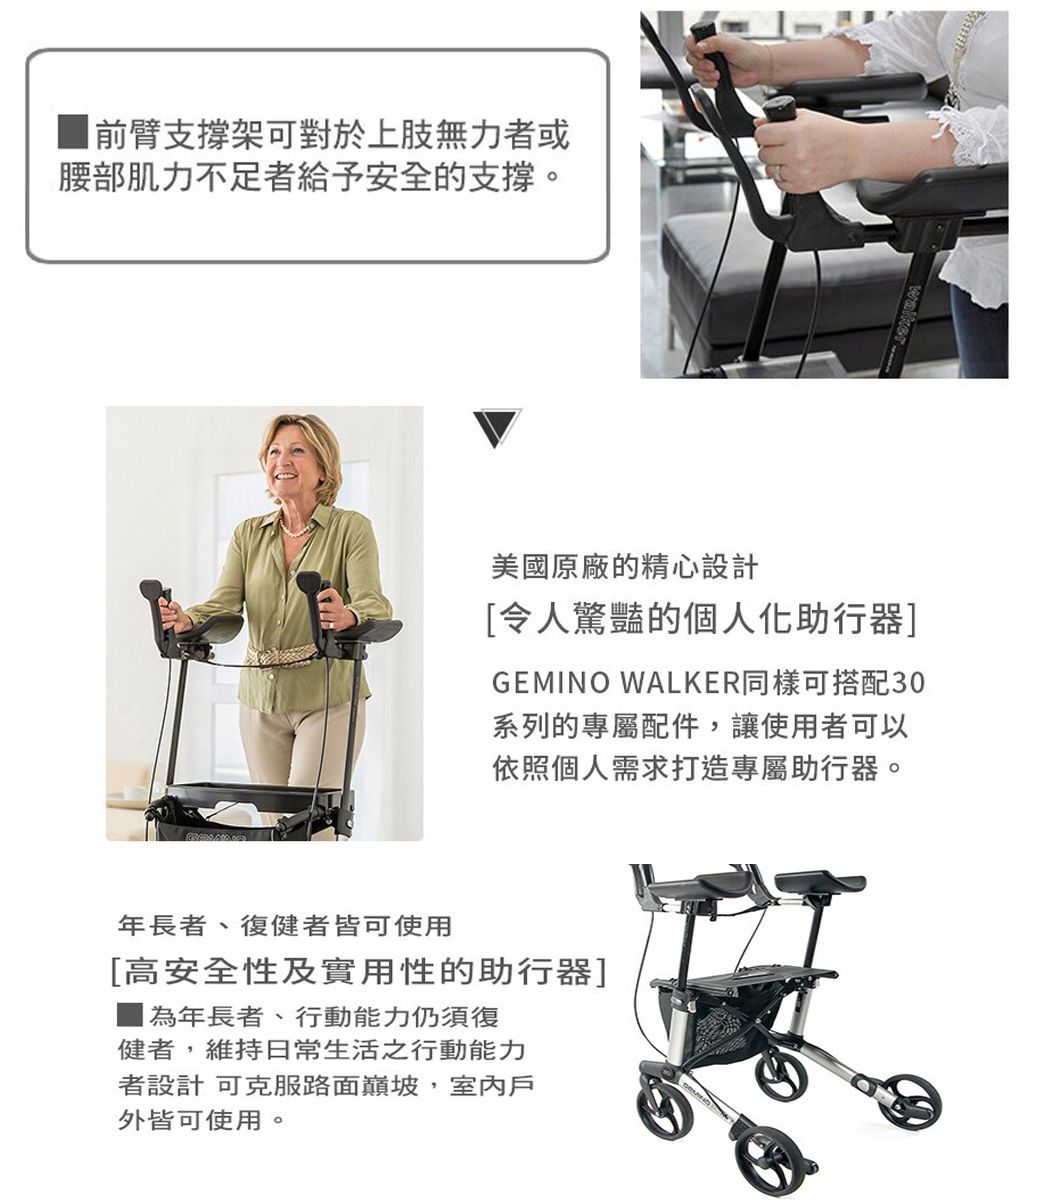 前臂支撐架可對於上肢無力者或腰部肌力不足者給予安全的支撐。美國原廠的精心設計令人驚豔的個人化助行器]GEMINO WALKER同樣可搭配30系列的專屬配件,讓使用者可以依照個人需求打造專屬助行器。年長者、復健者皆可使用[高安全性及實用性的助行器]年長者、行動能力仍須復健者,維持日常生活之行動能力者設計 可克服路面巔坡,室內戶外皆可使用。